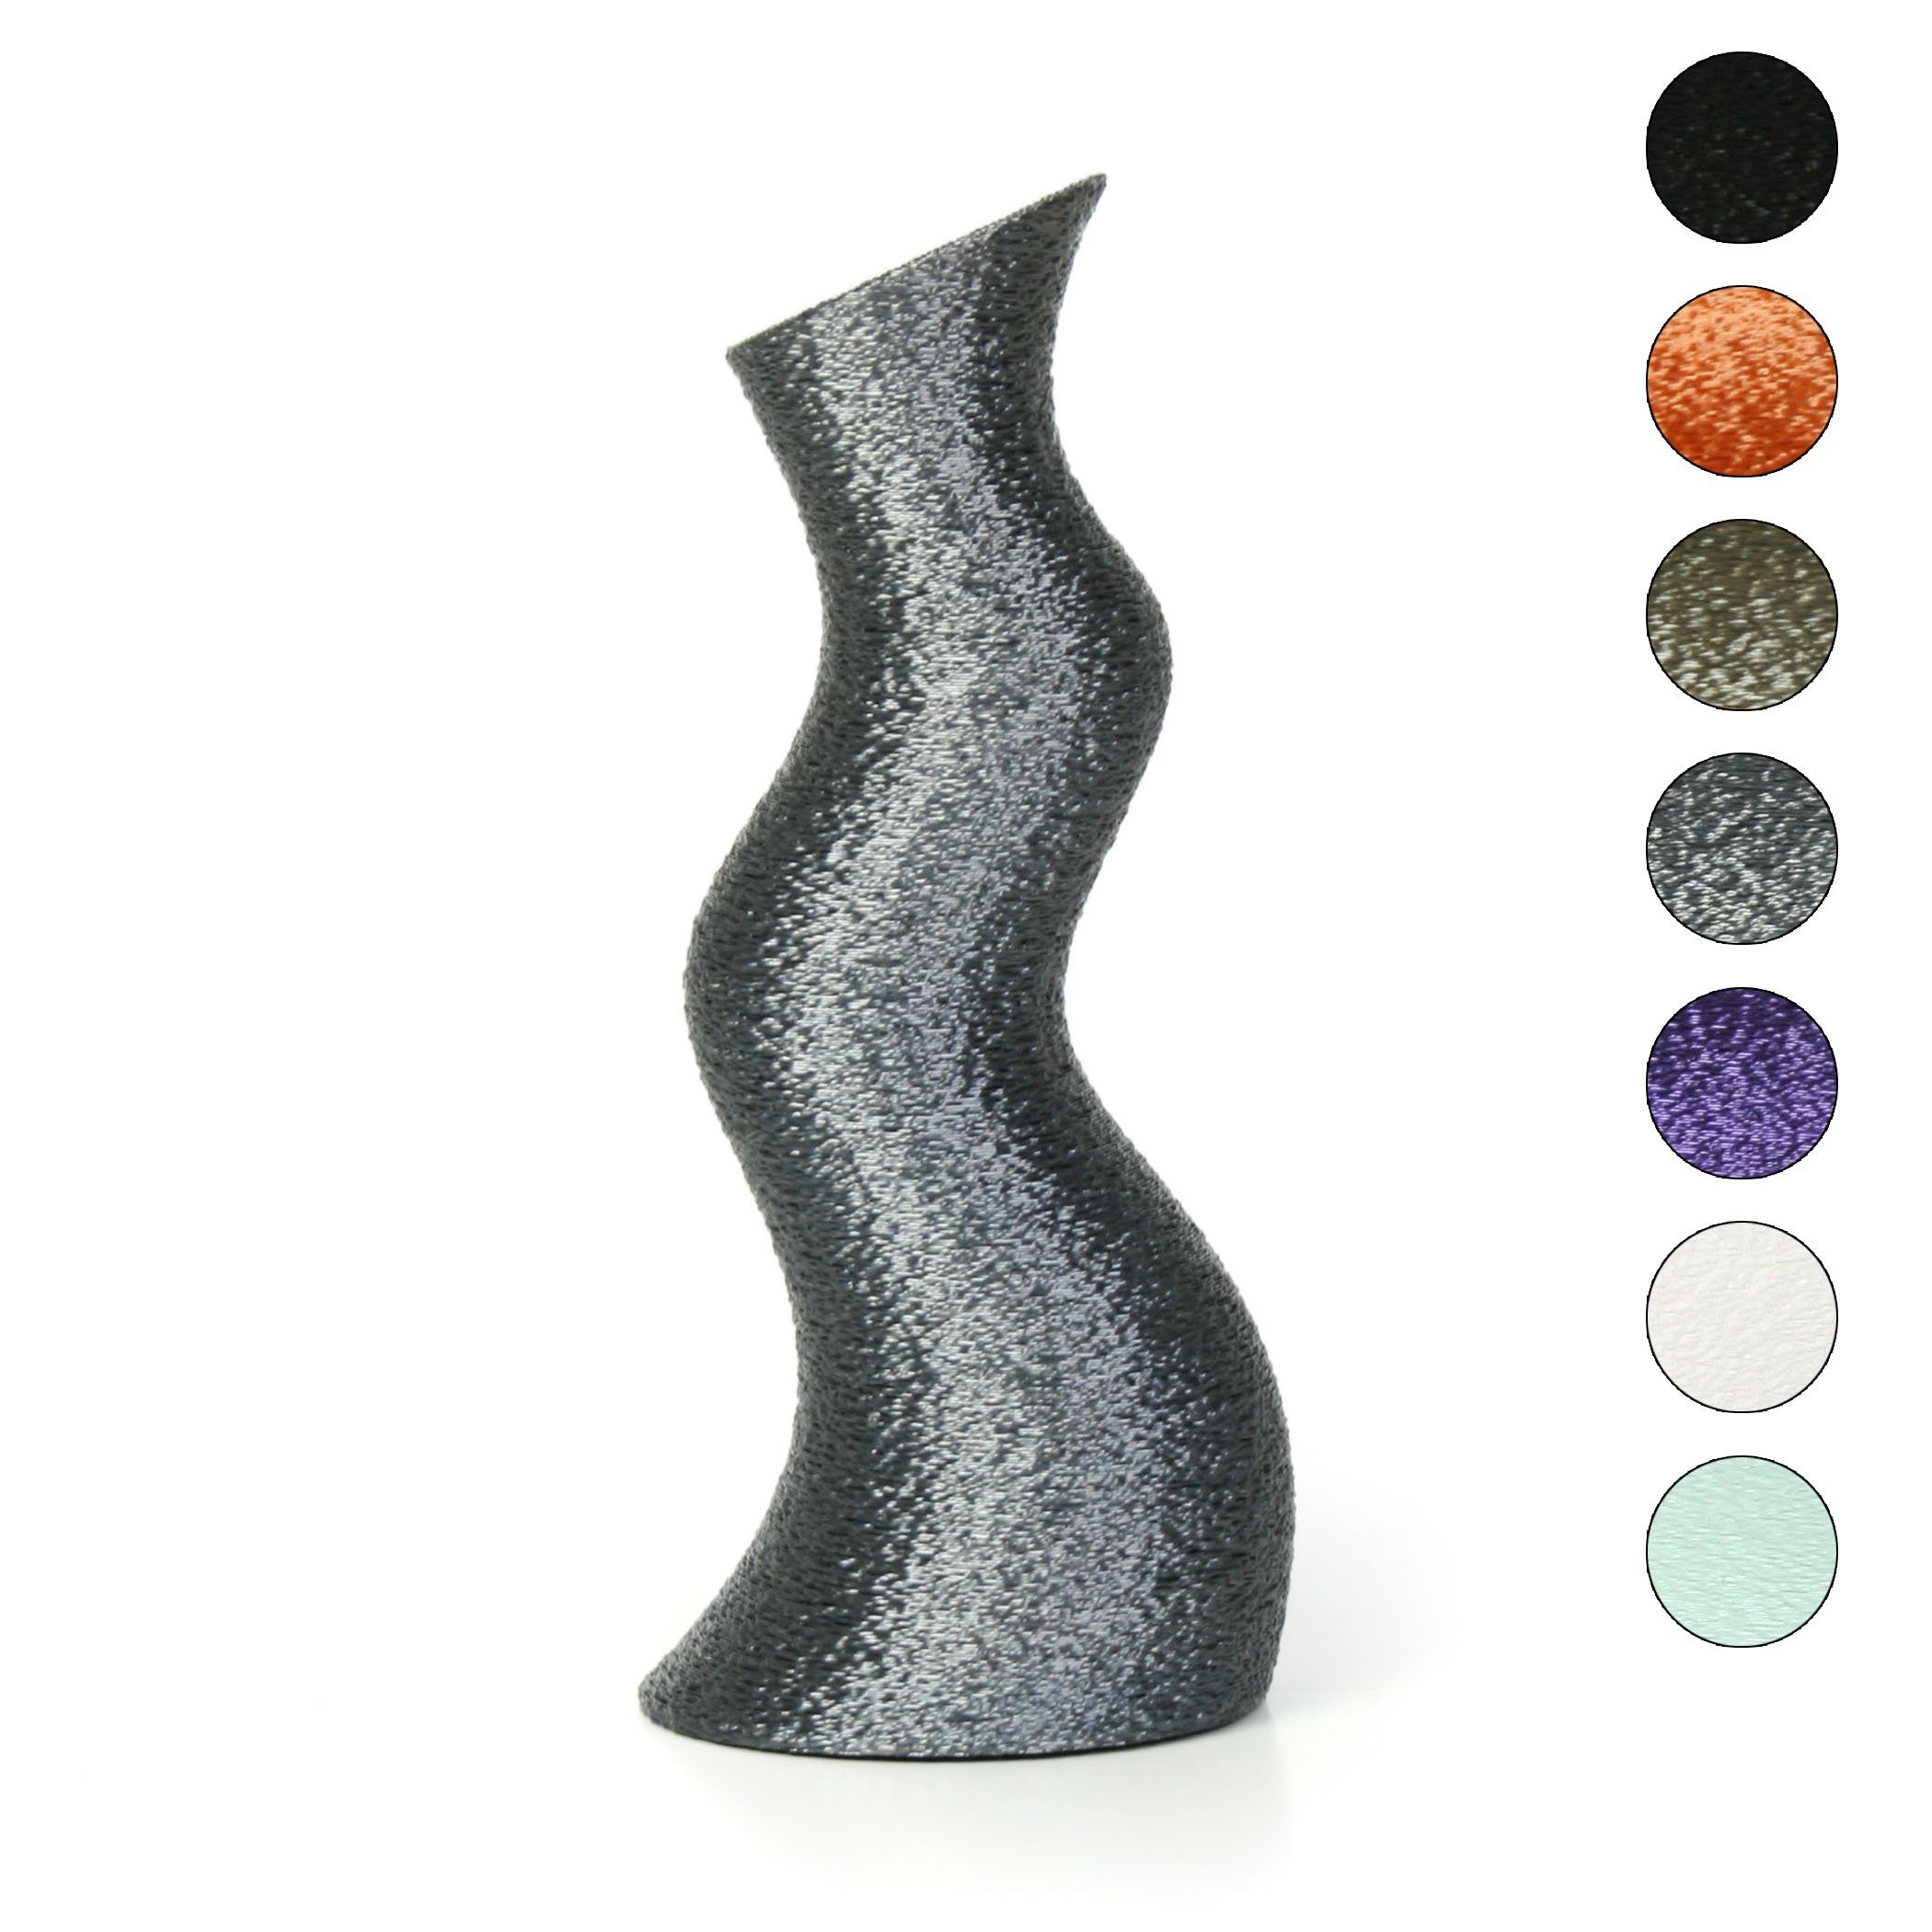 Kreative Feder Dekovase Designer Vase – Dekorative Blumenvase aus Bio-Kunststoff, aus nachwachsenden Rohstoffen; wasserdicht & bruchsicher Old Silver